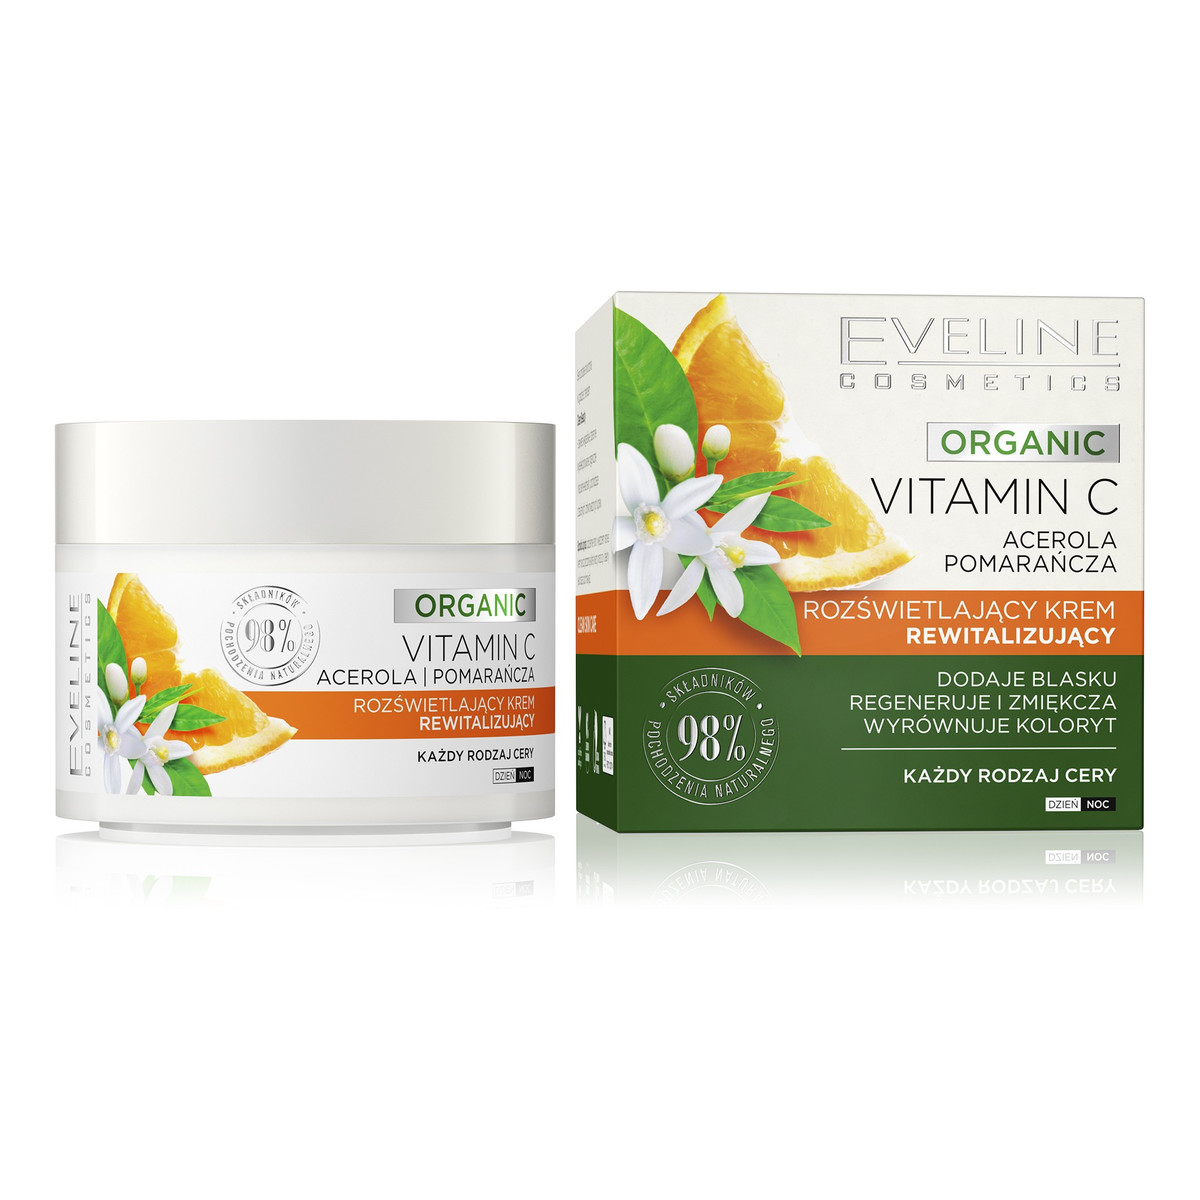 Eveline Organic Vitamin C Rozświetlający Krem rewitalizujący na dzień i noc - każdy rodzaj cery 50ml